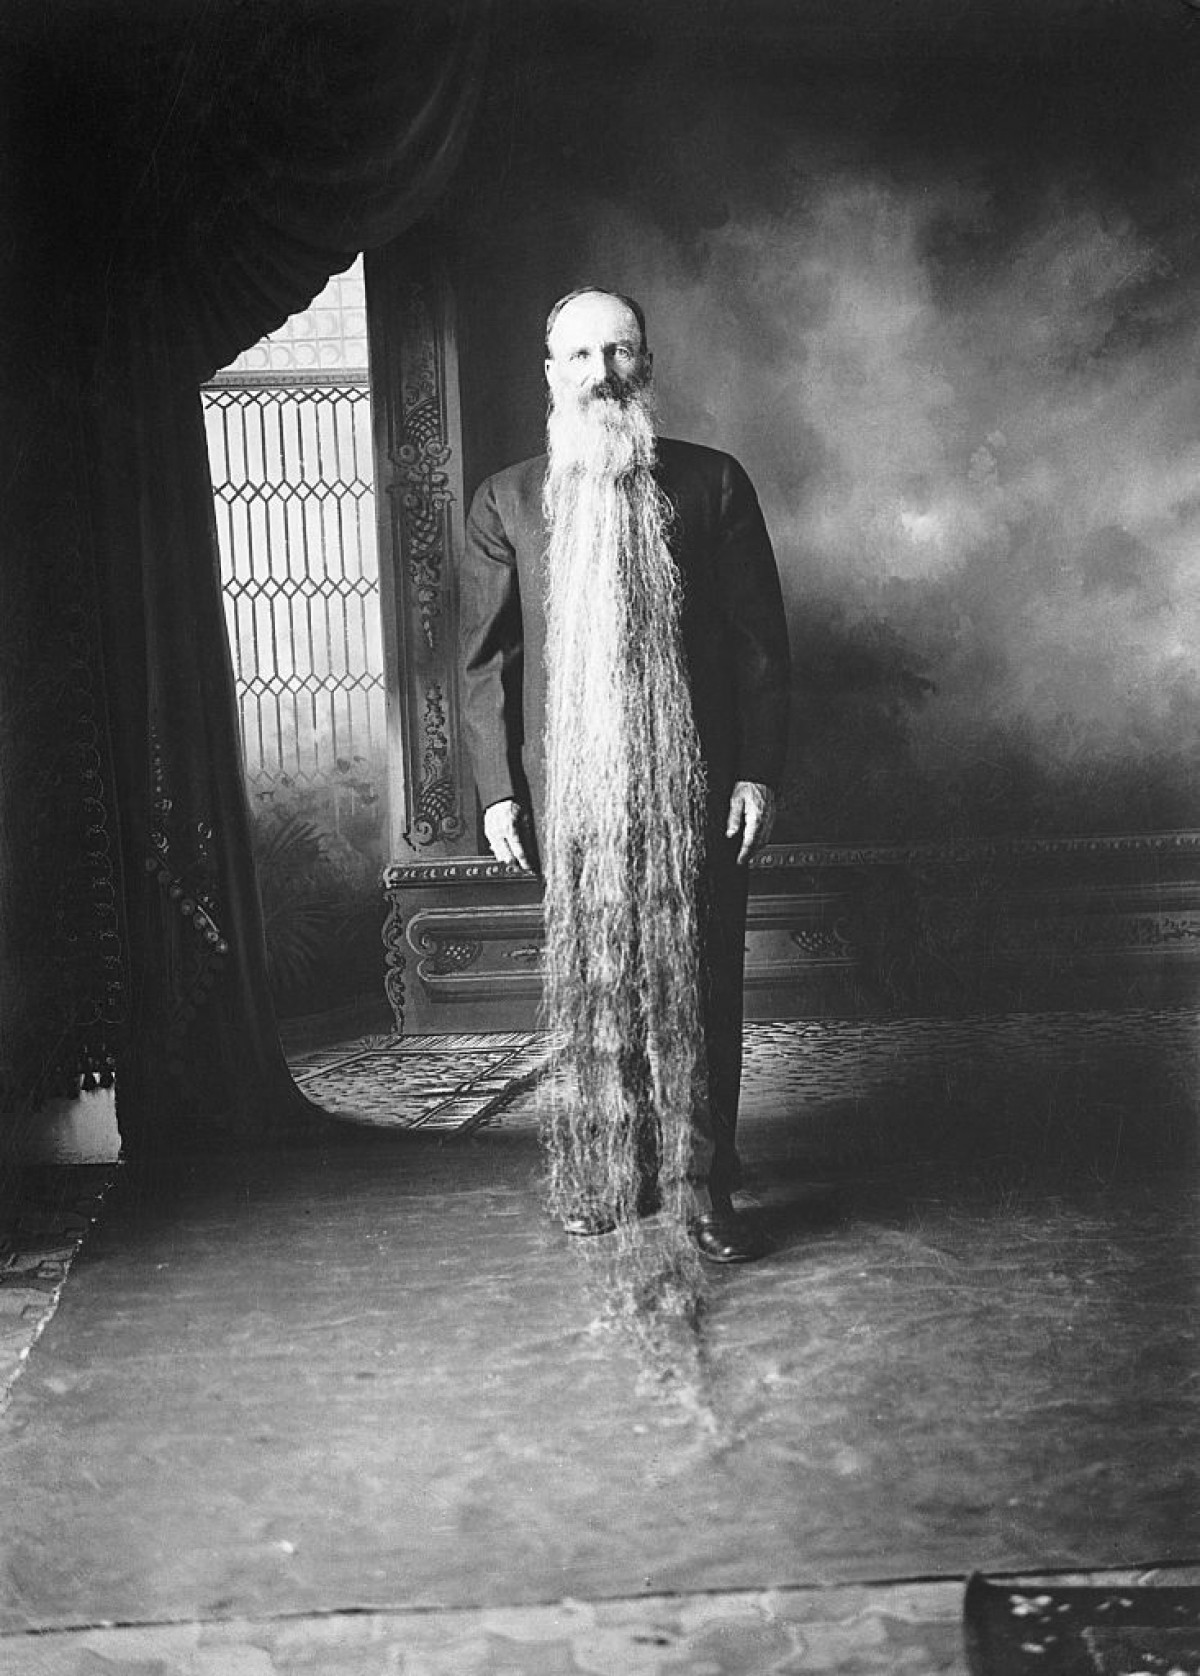 Năm 1922, người đàn ông có bộ râu dài nhất thế giới là Zach T. Wilcox ở thành phố Carson, Nevada (Mỹ). Ông Wilcox đã để râu trong 41 năm, bắt đầu từ năm 1881.